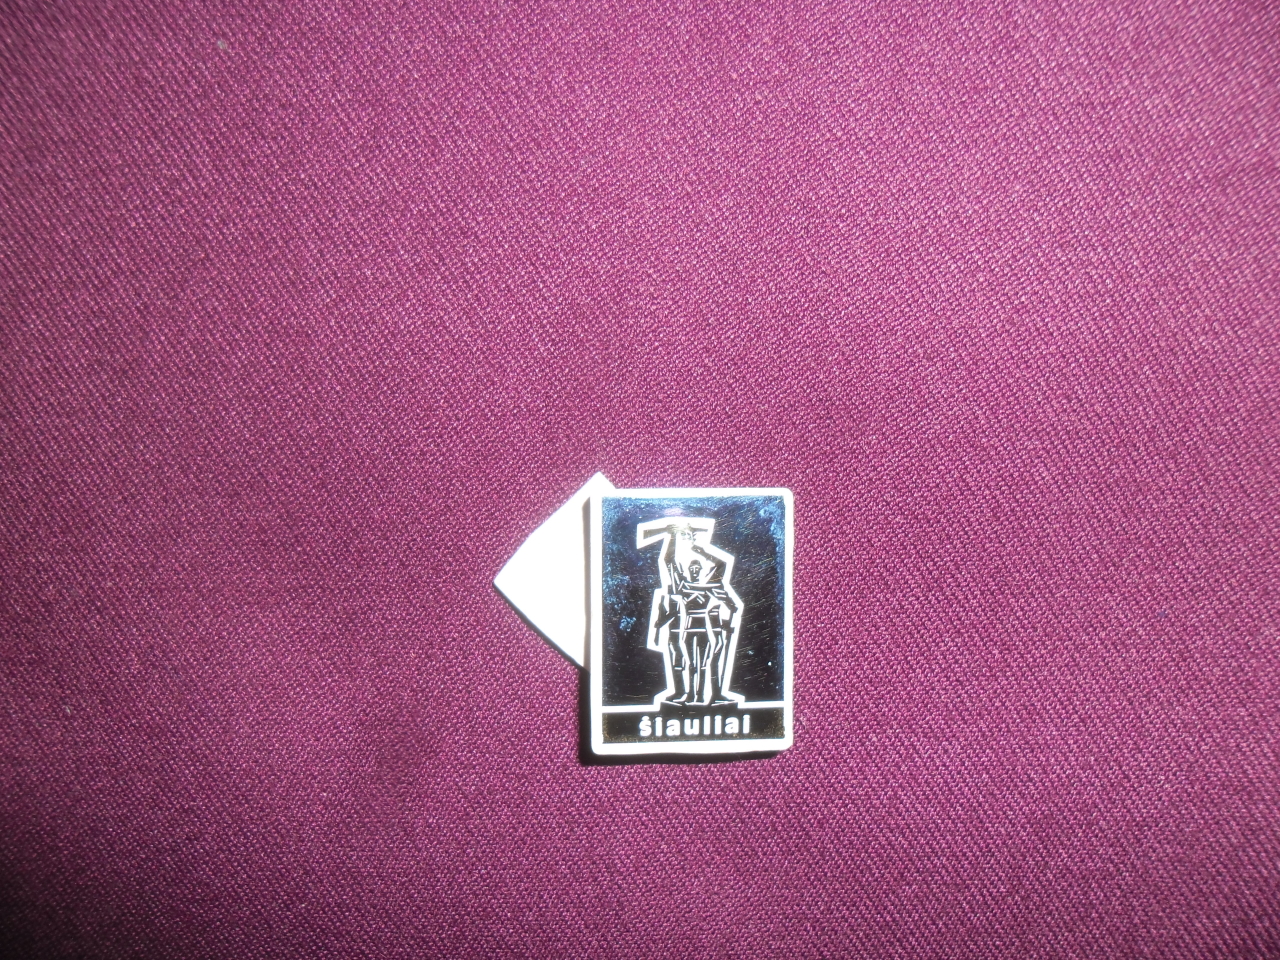 Կրծքանշան՝ Արմեն Հենրիկի Բադեյանի («Եվրոստան -Ույուտ» ֆիրմայի հիմնադիր,գործարար)